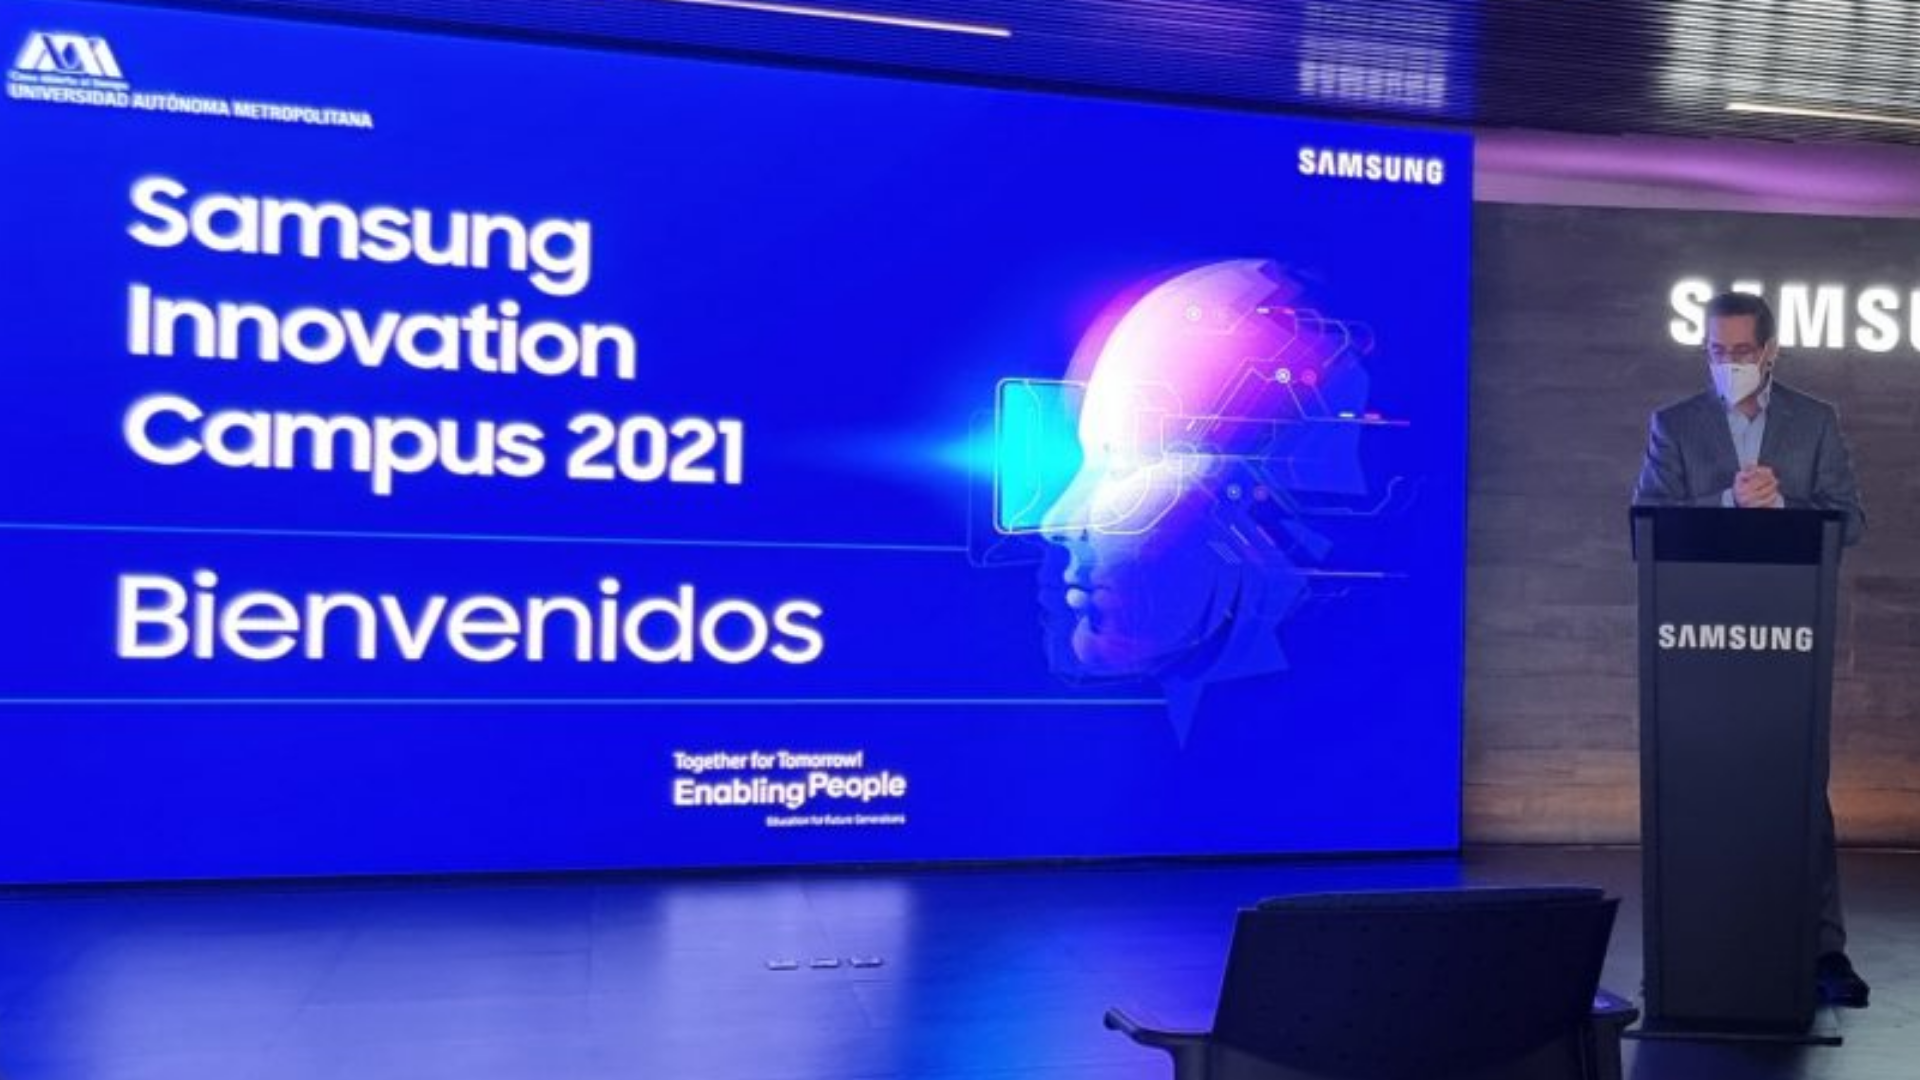 Samsung Innovation Campus 2021